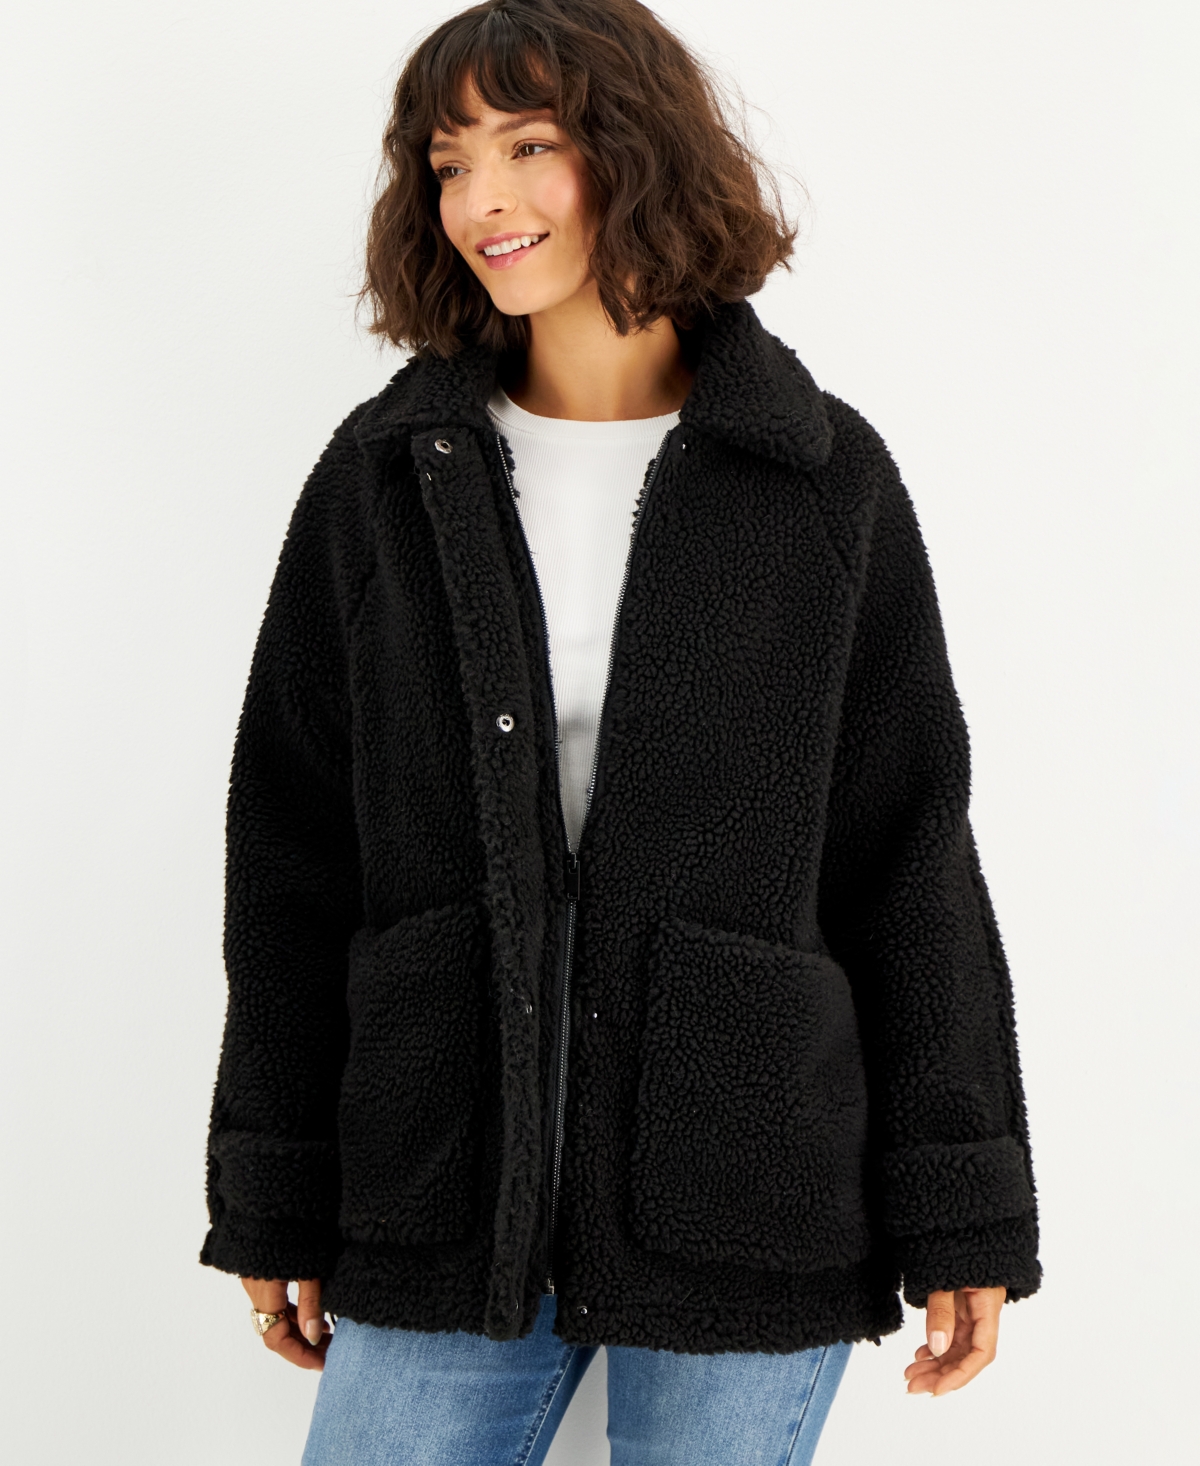 Juniors' Collared Zip-Front Fleece Coat - Black